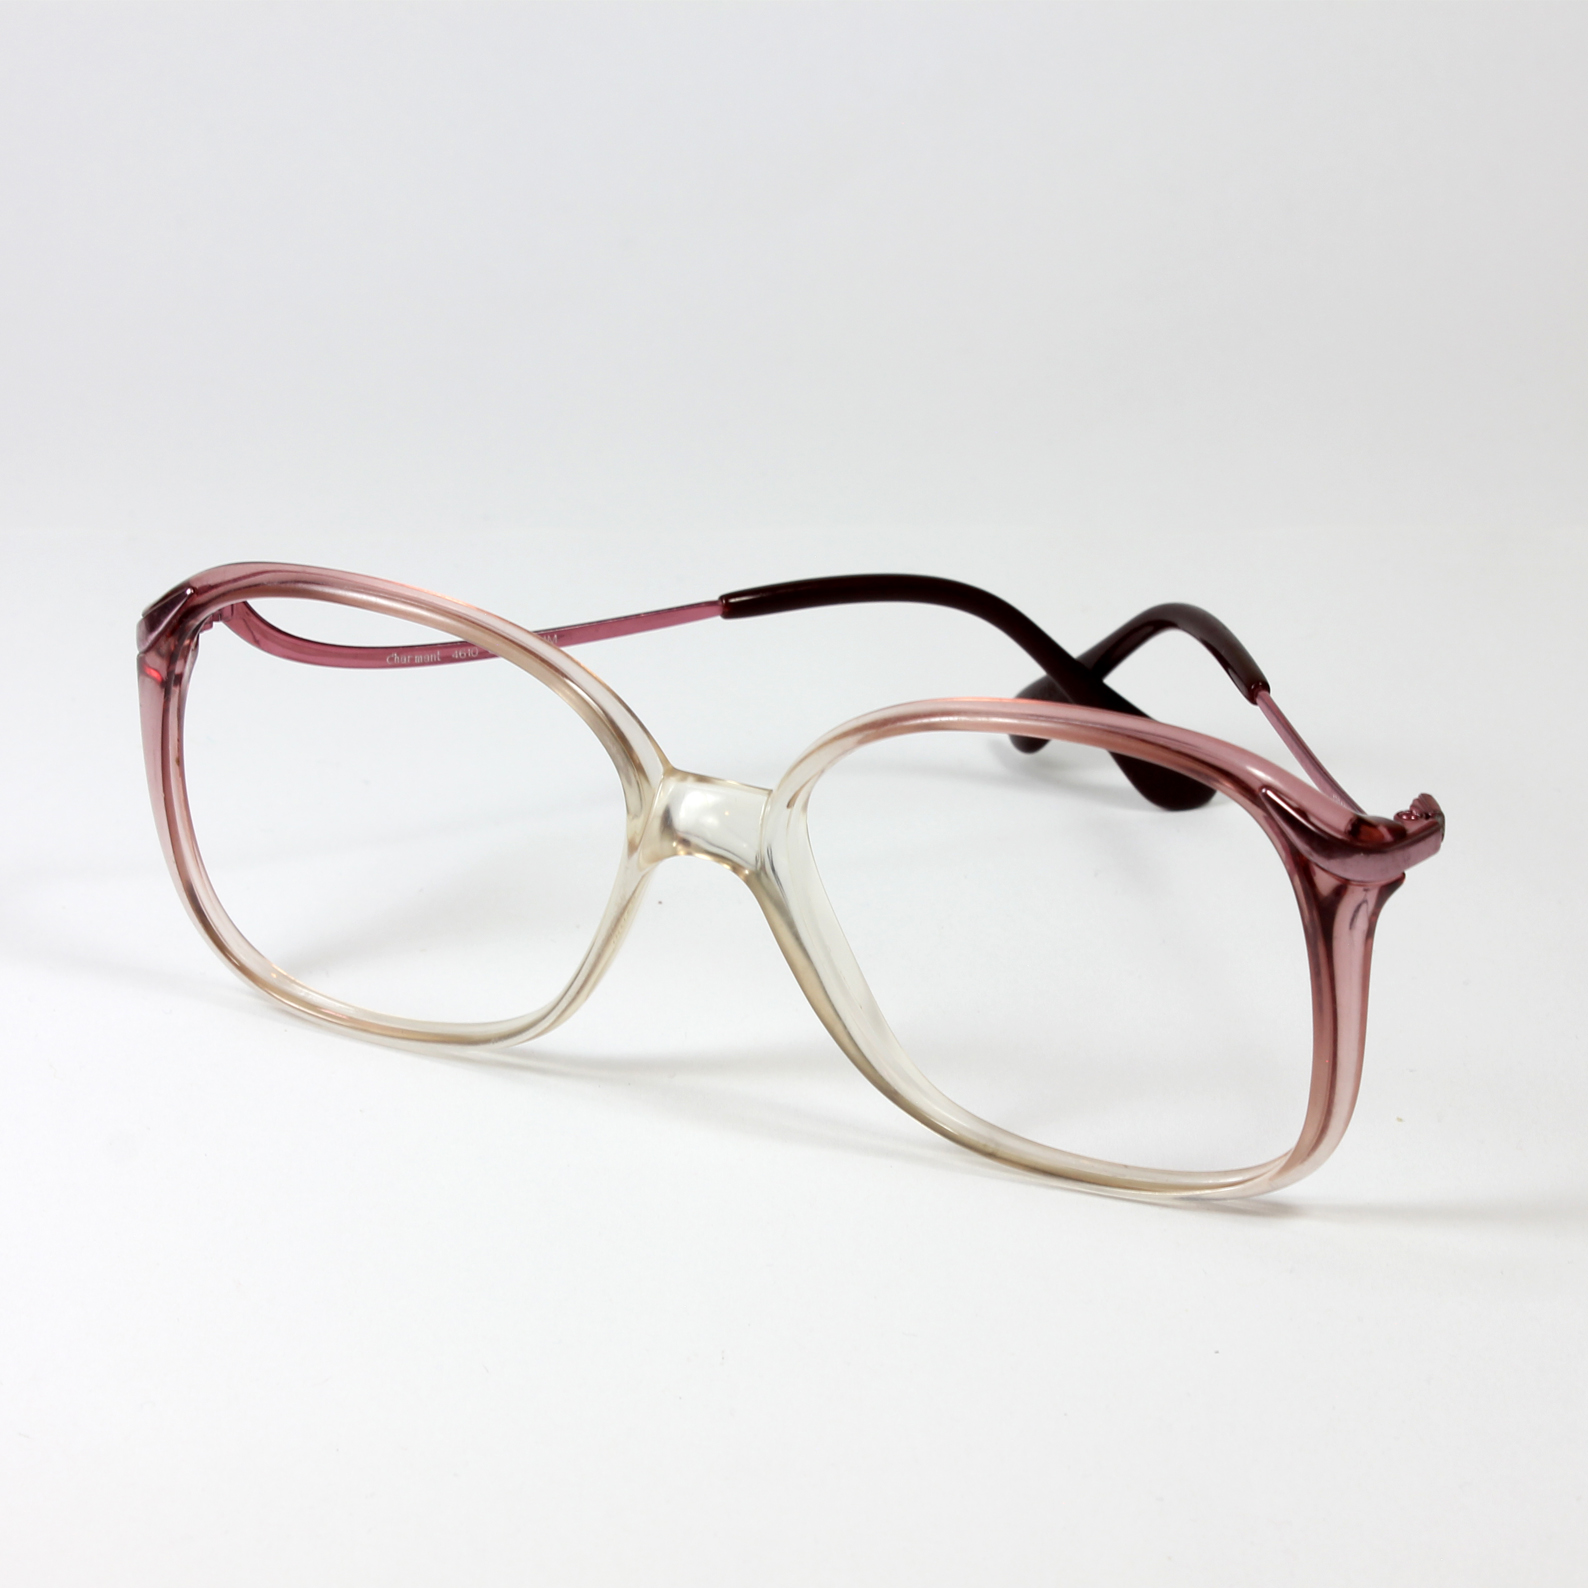 فریم عینک طبی چارمنت مدل 4610 -  - 2